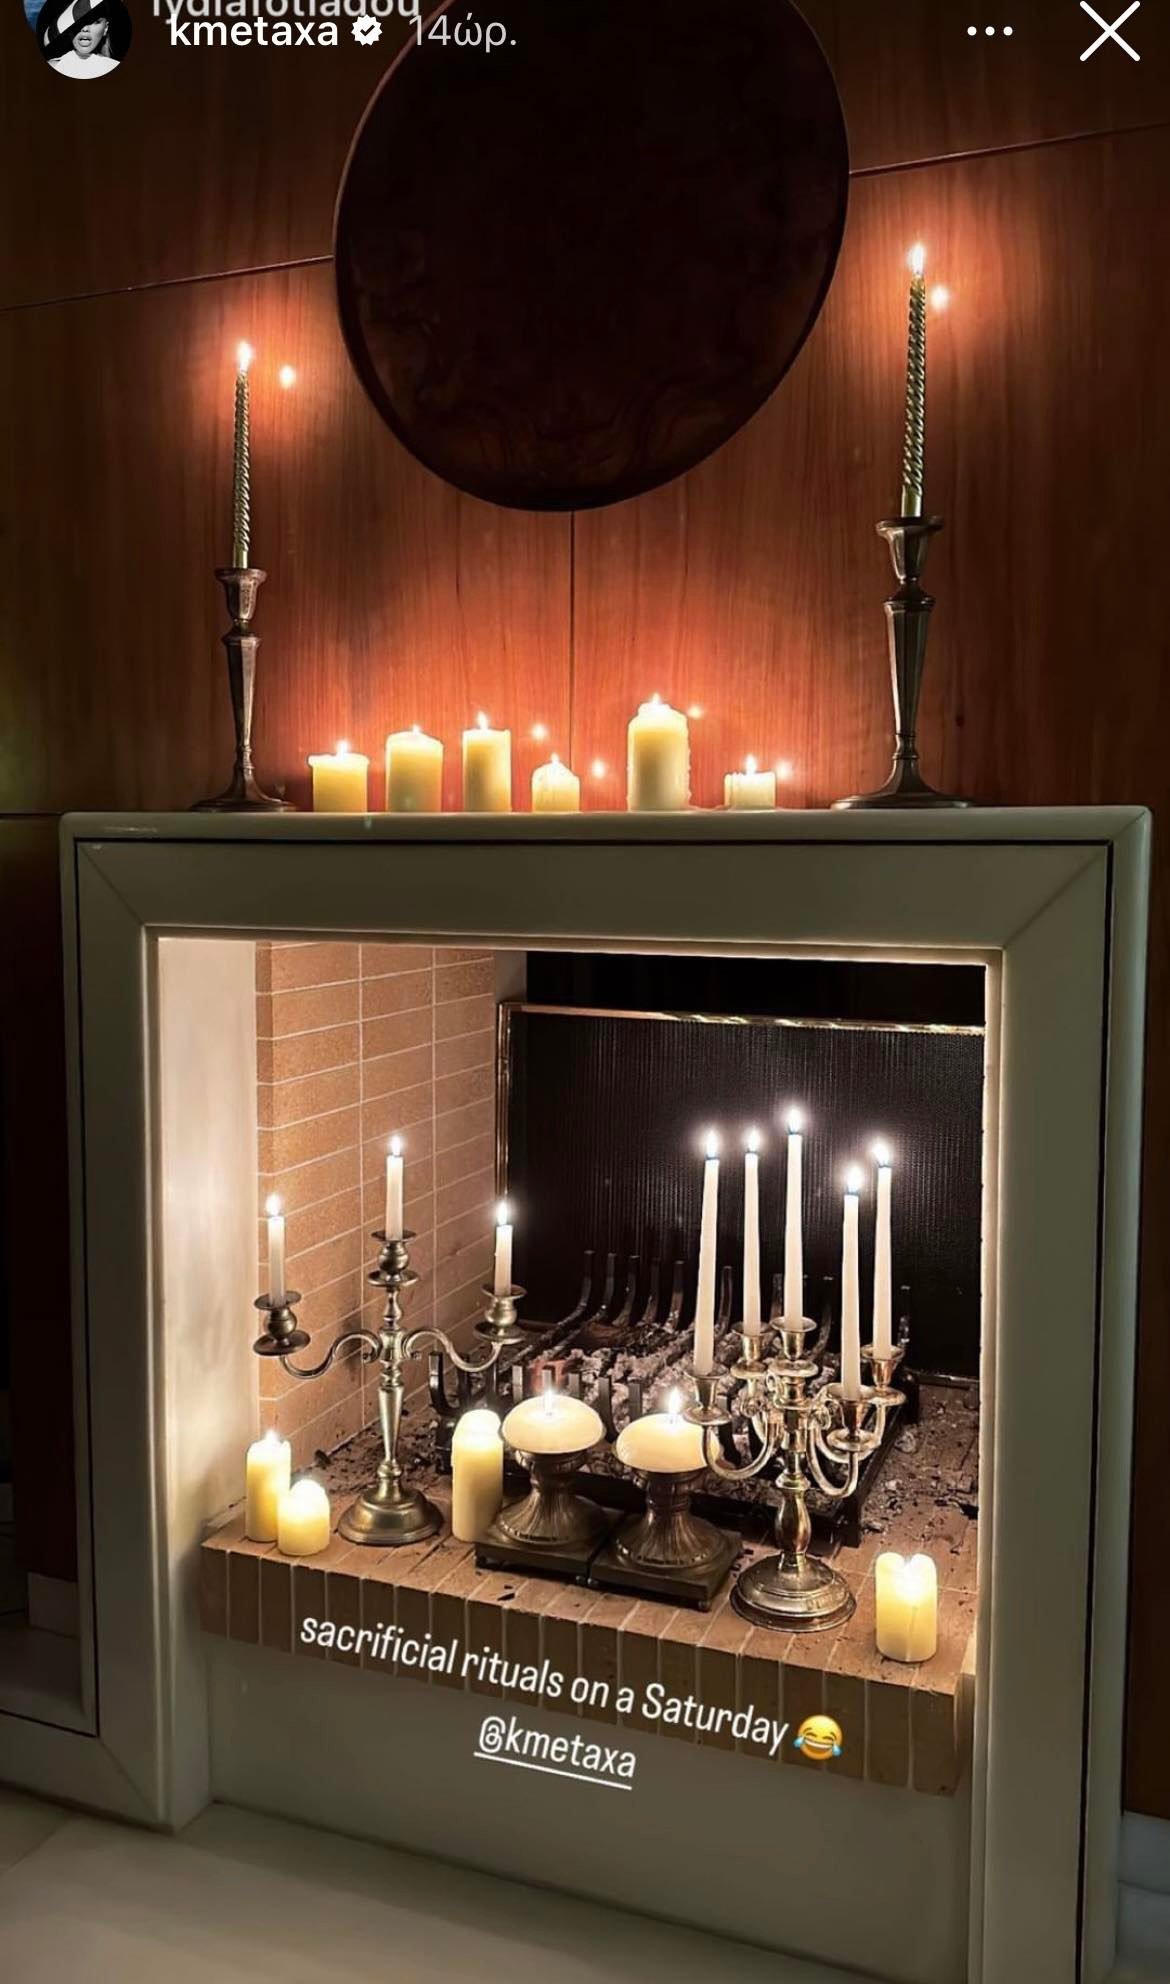 Κόνι Μεταξά: Η διακόσμηση στο ιδιαίτερο τζάκι που κοσμεί το σαλόνι της, με τα μεγάλα κηροπήγια θα σας εντυπωσιάσει!